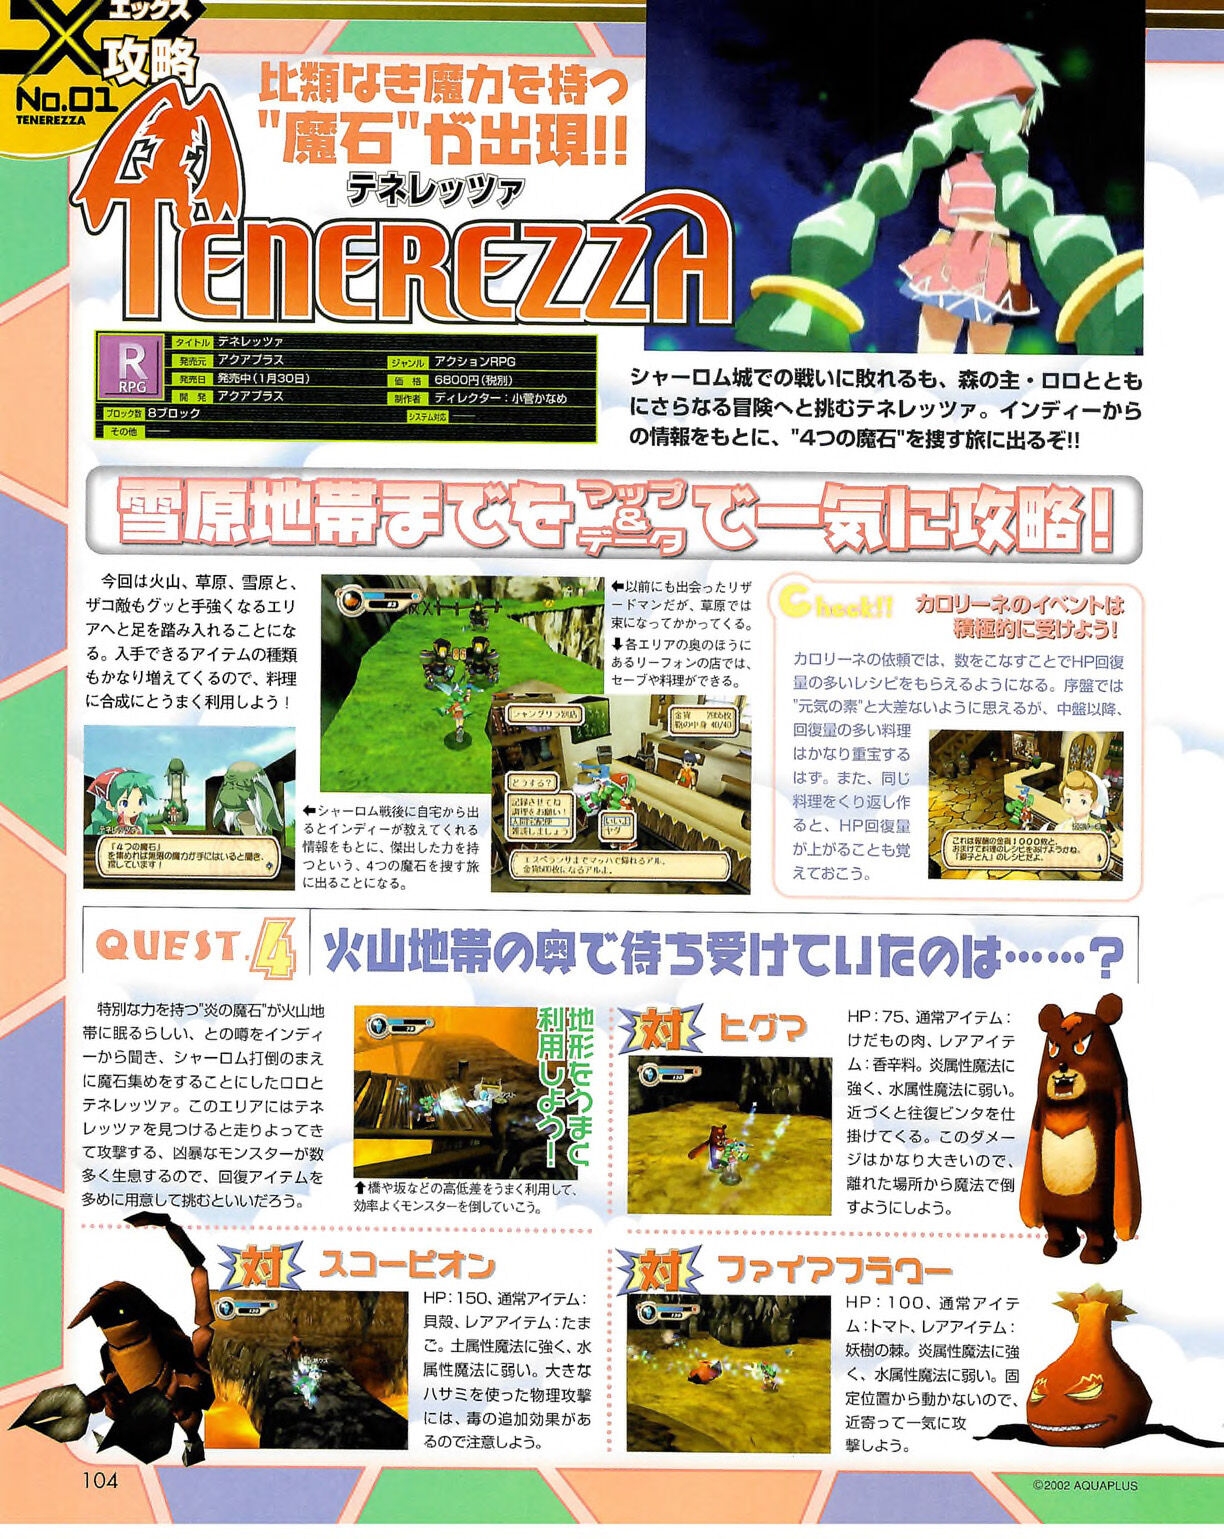 Famitsu_Xbox_2003-04_jp2 103